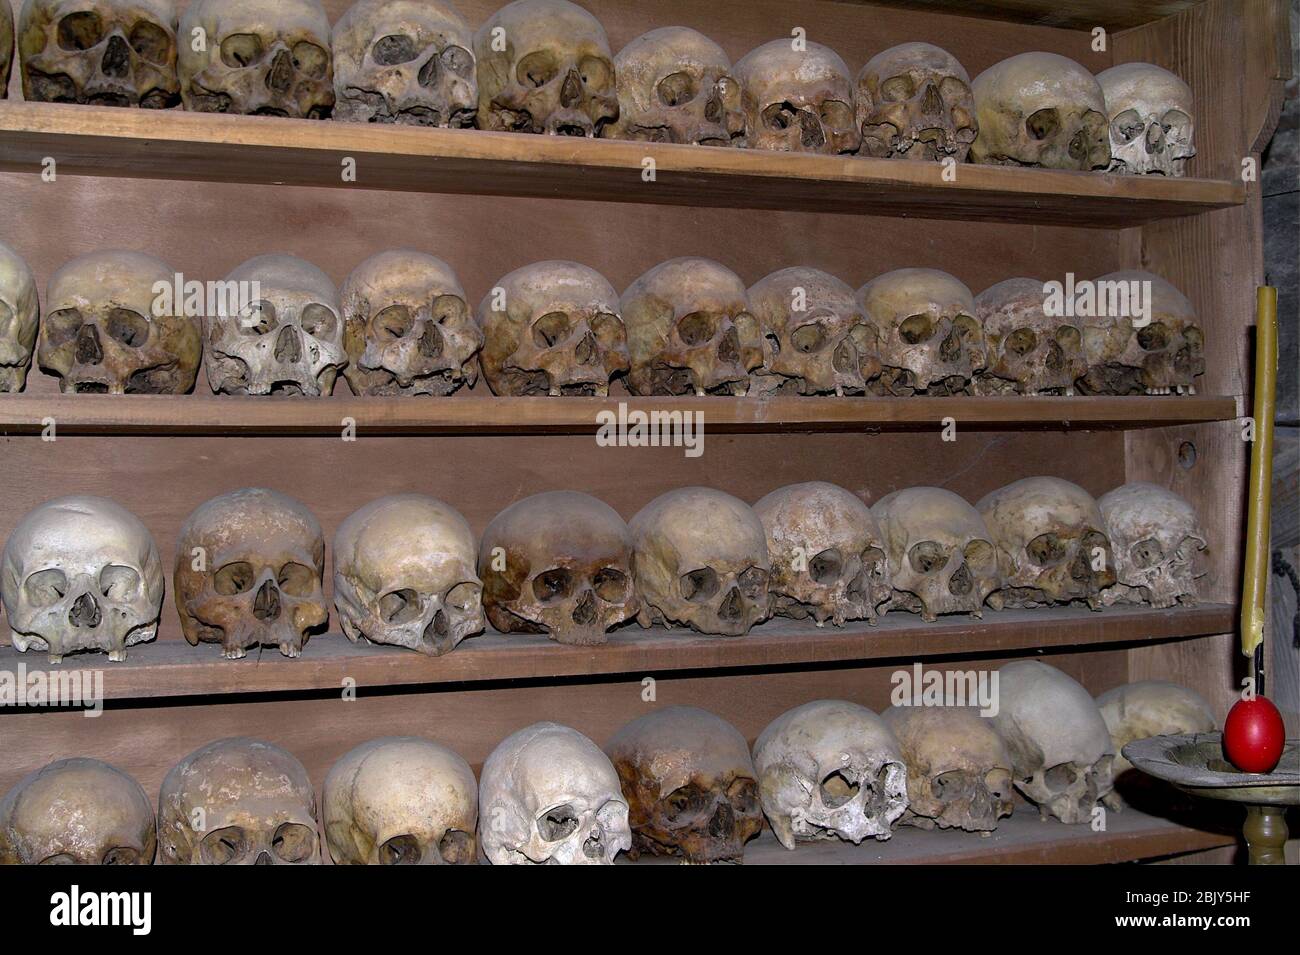 Human skulls standing on a shelf. Menschliche Schädel, die auf einem Regal stehen. Ludzkie czaszki stojące na półce. 站立在架子的人的頭骨。 Stock Photo